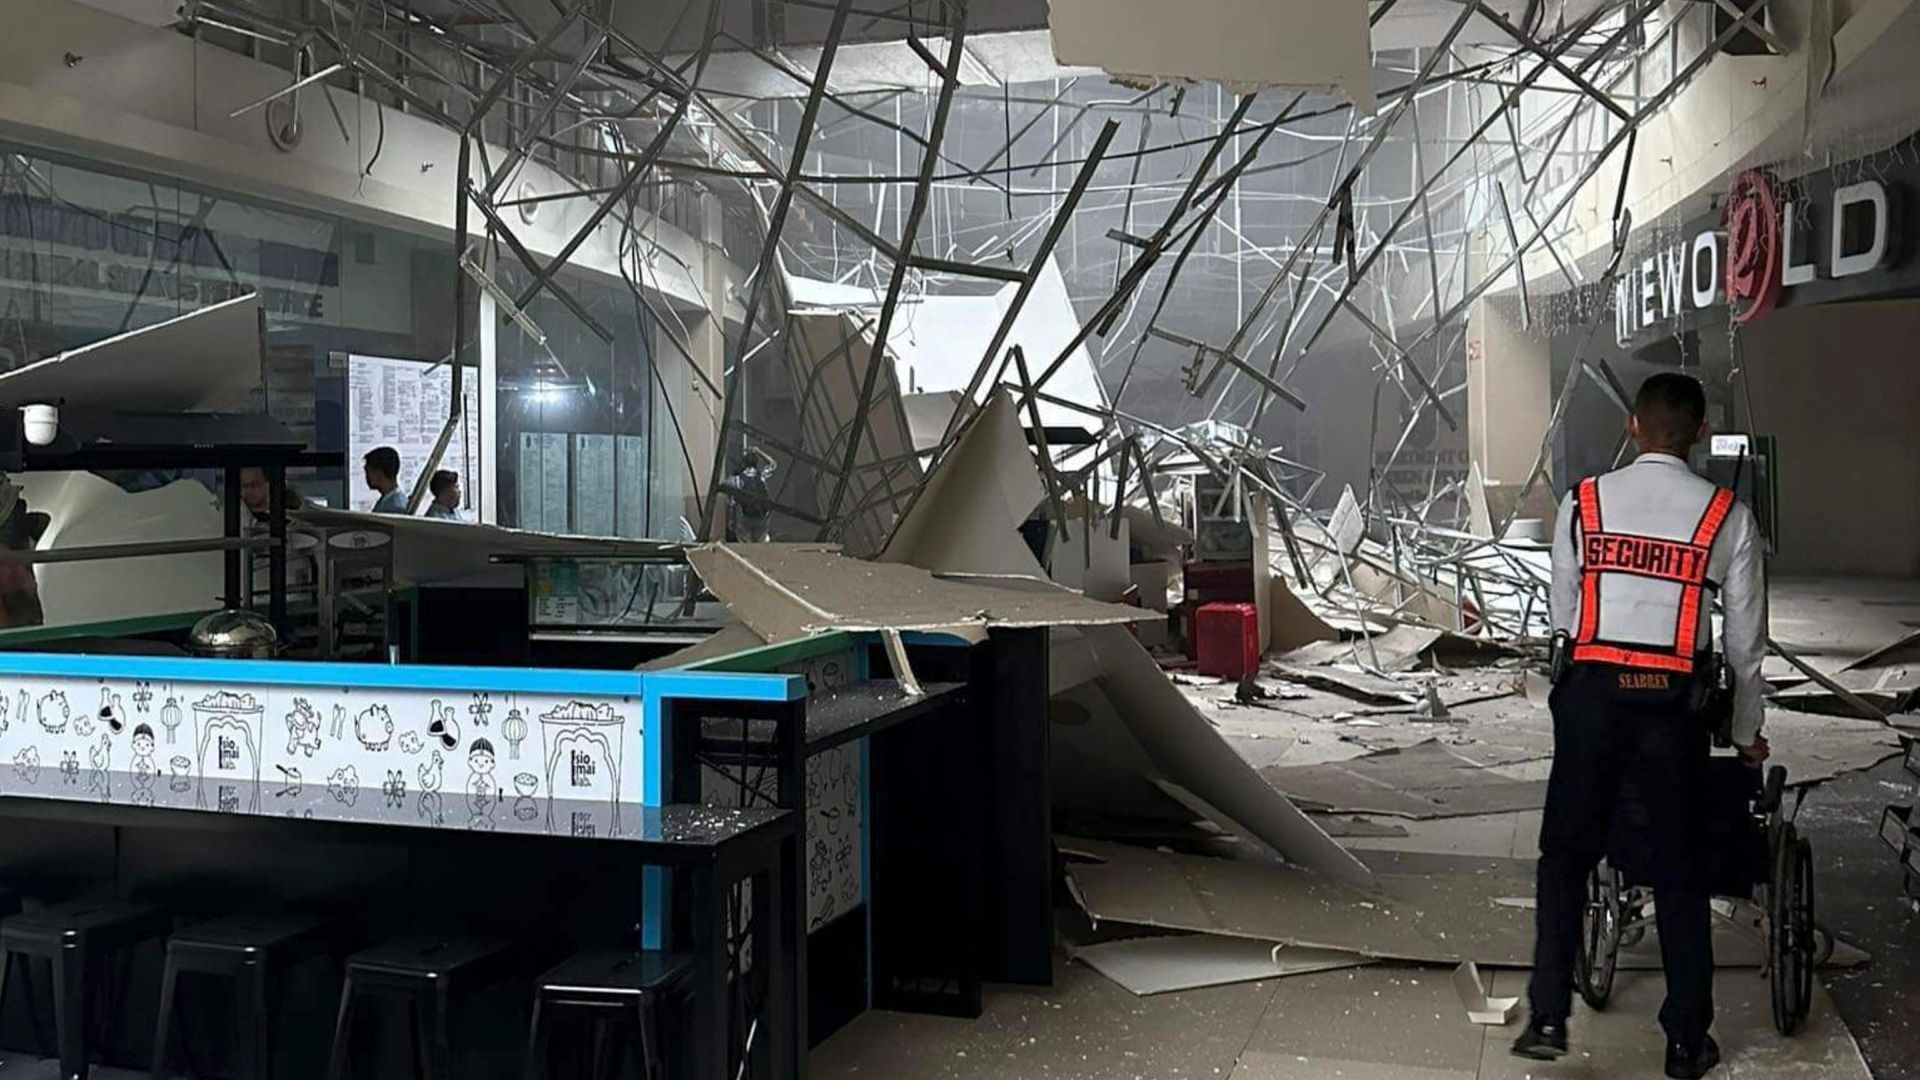 Guardia observa daños en plaza comercial tras terremoto en Filipinas